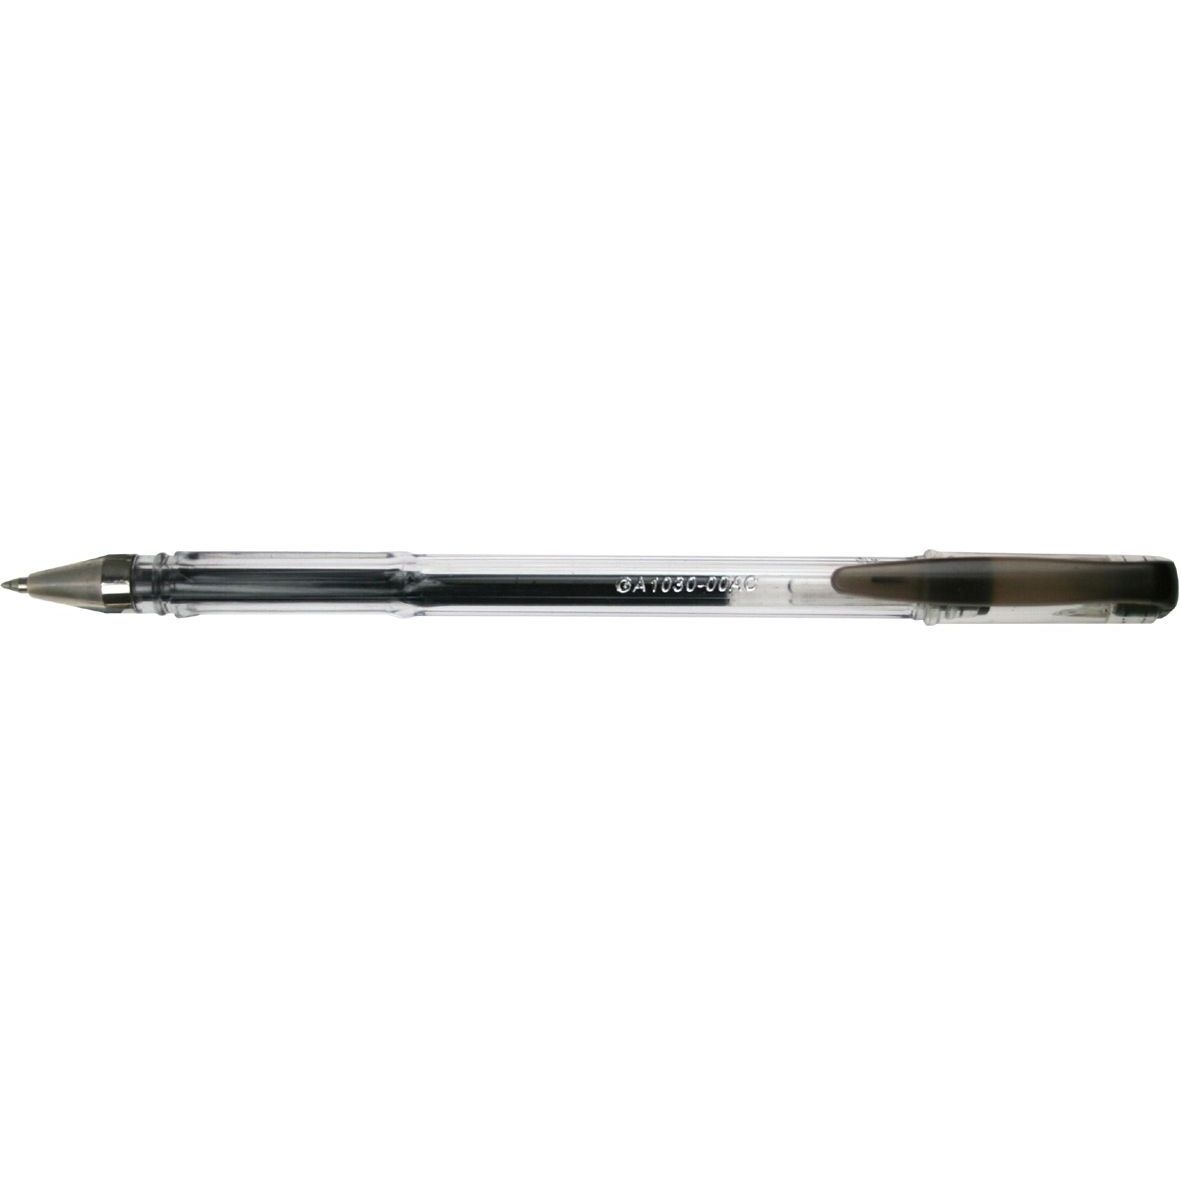 Długopis żelowy - czarny (100314)